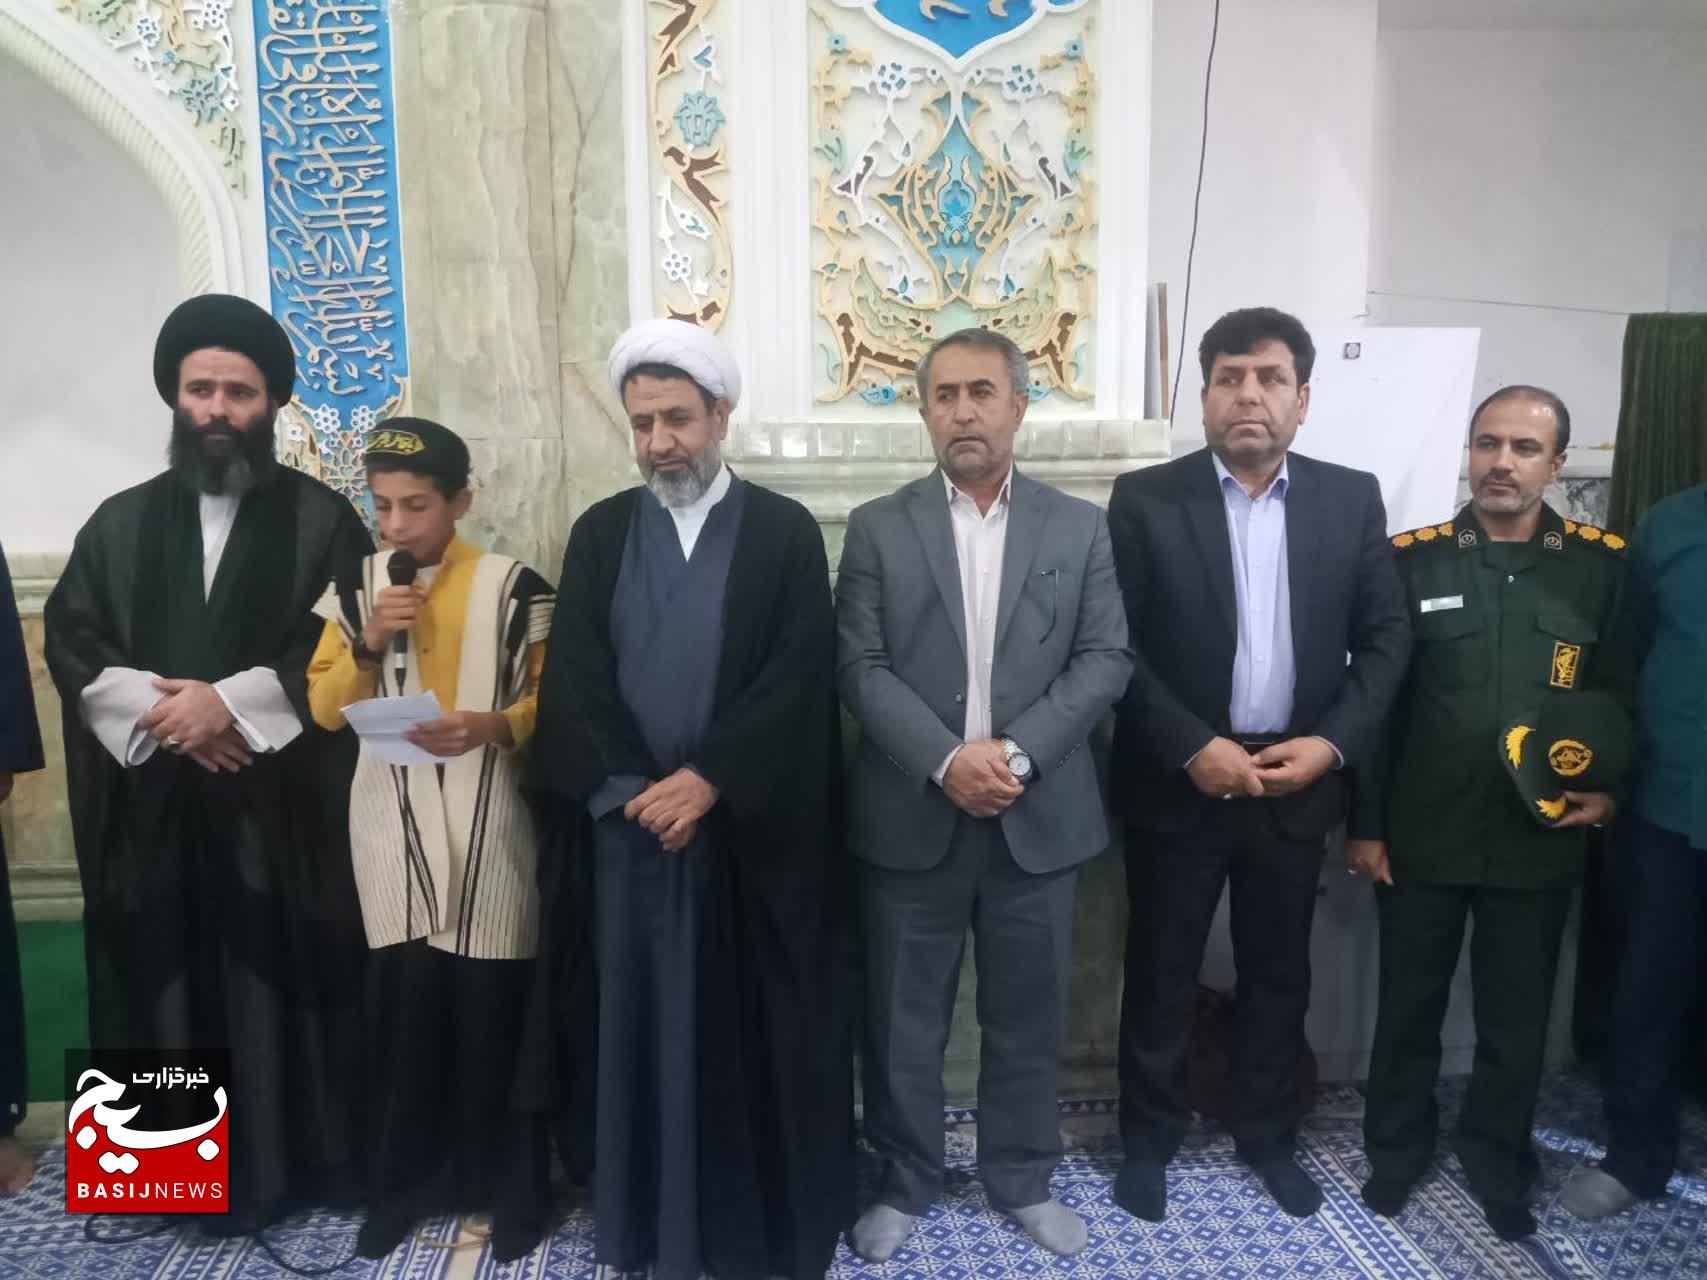 بزرگان عشایر خوزستان با آرمانهای مقام معظم رهبری و شهید حاج قاسم سلیمانی تجدید میثاق کردند